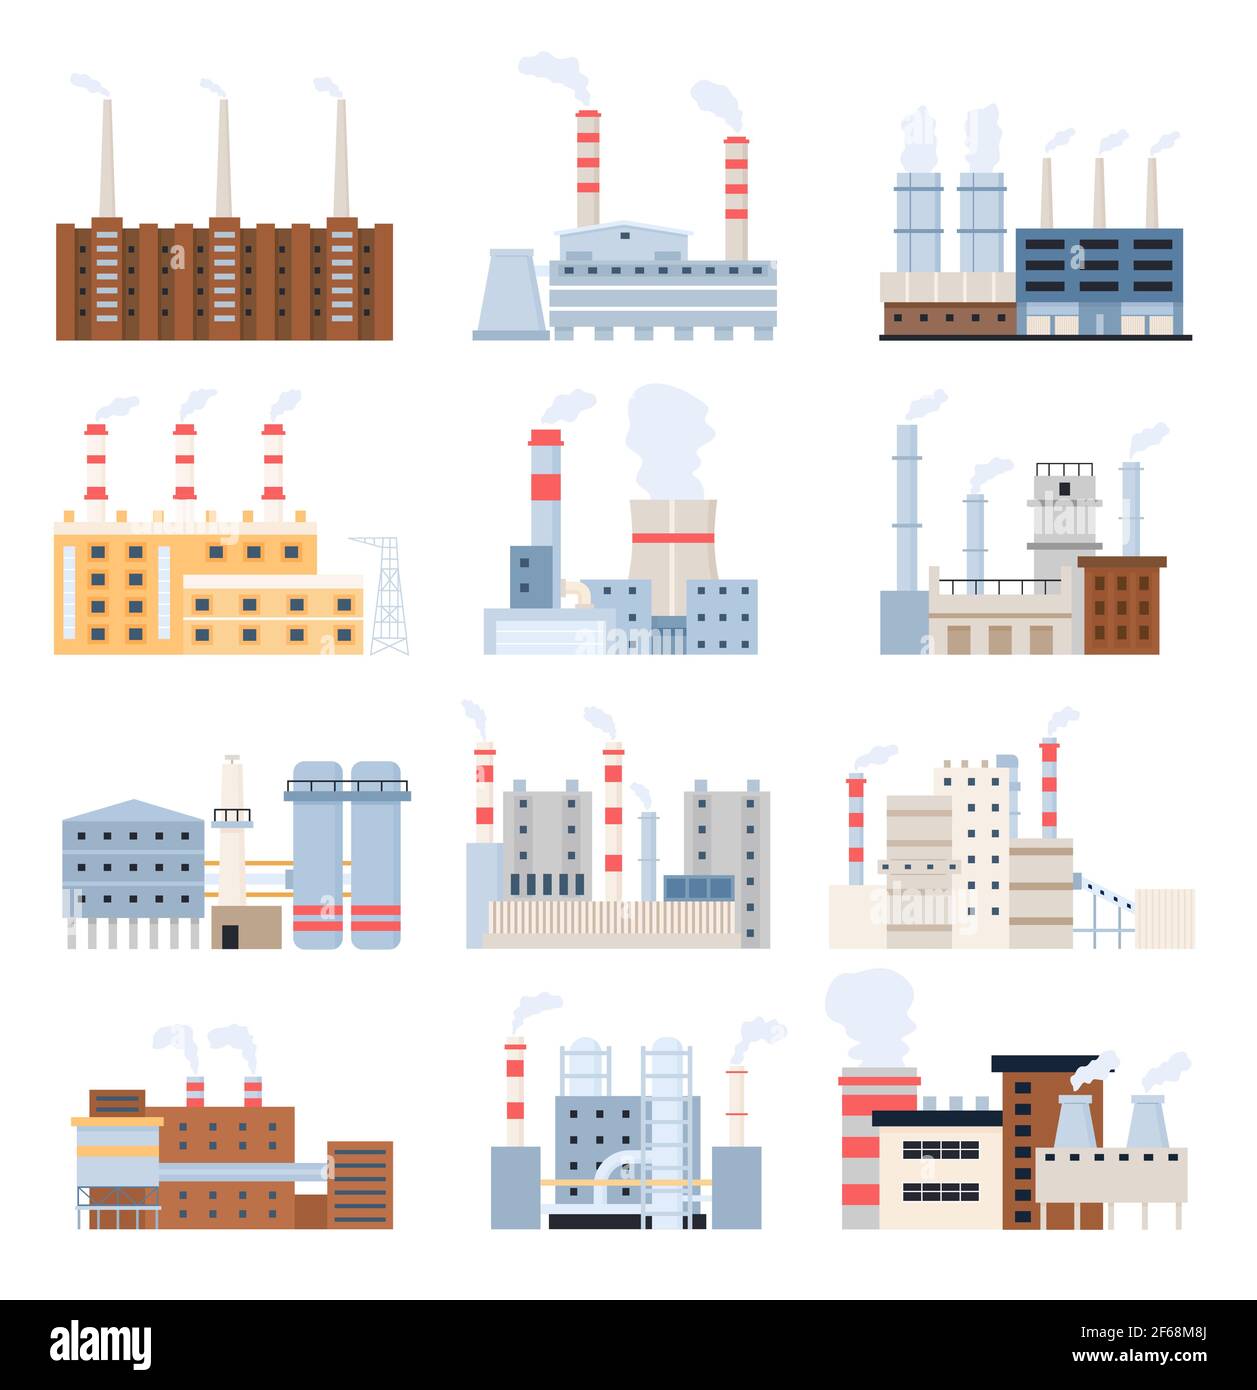 Fertigungswerk. Industriegebäude, Elektrizitätswerk, Kernkraftwerk und Chemiekomplex mit Kamin. Vektorset für Fabriken Stock Vektor